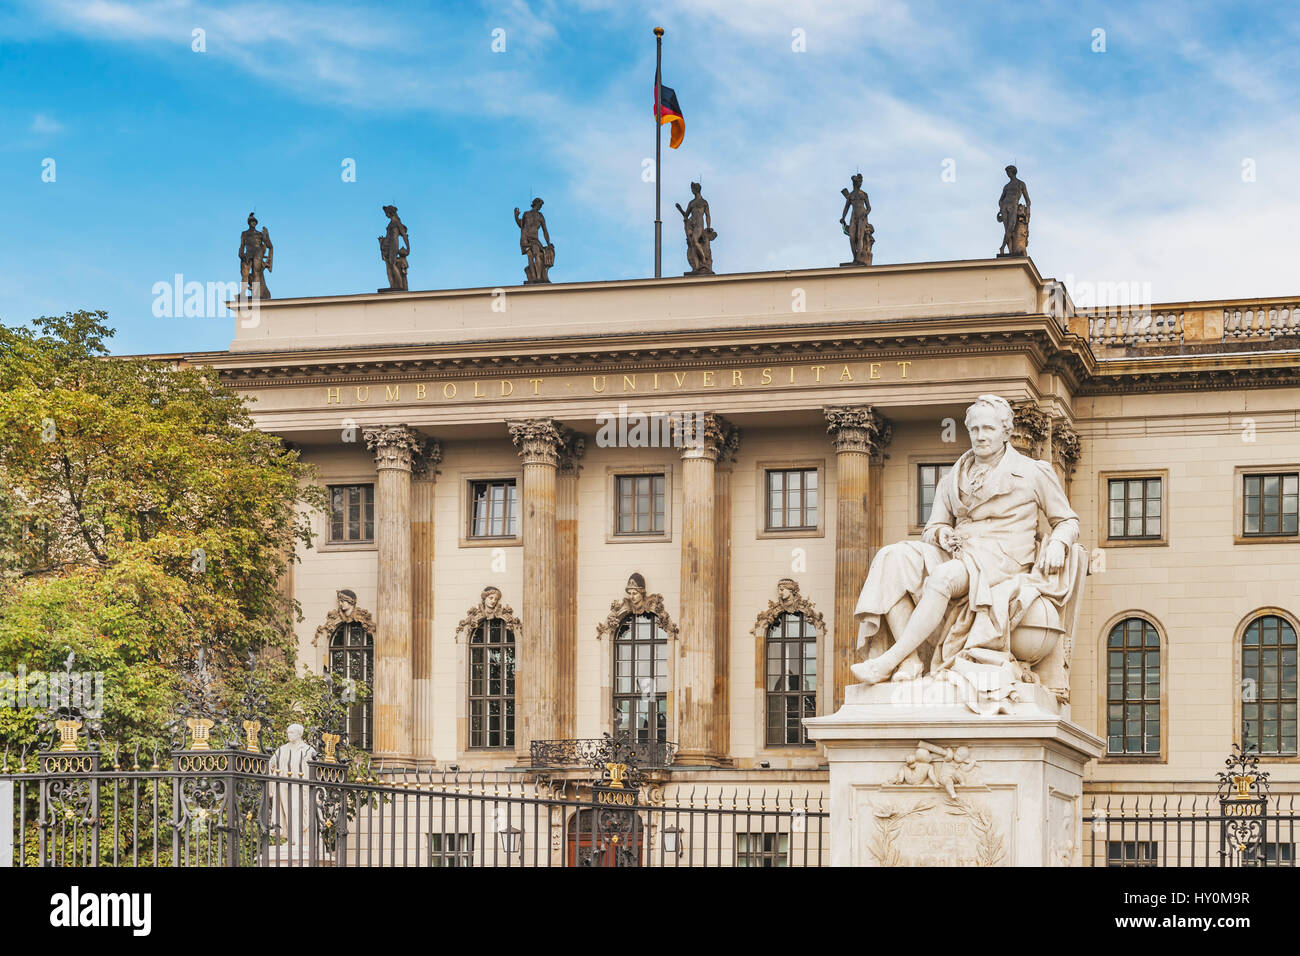 Die Humboldt-Universität Zu Berlin (HU Berlin) wurde im Jahre 1809 gegründet. Das spätbarocke Gebäude wurde erbaut von 1748 bis 1753, Berlin, Deutschland, Europa Stockfoto